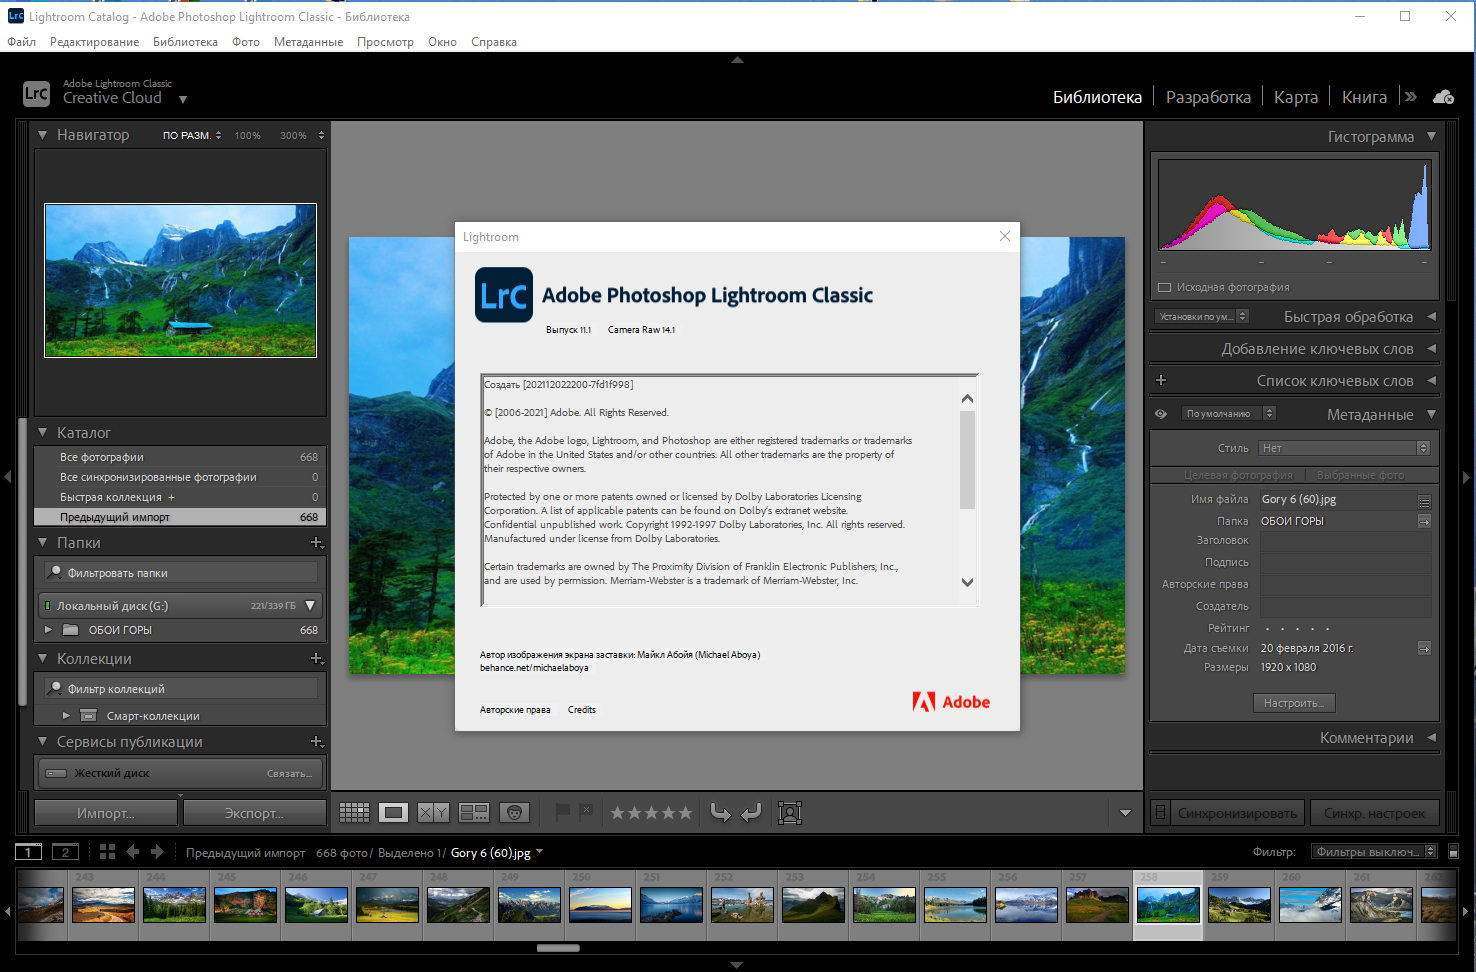 Adobe Photoshop Lightroom Classic 11.1.0.10 RePack by KpoJIuK [Multi/Ru]